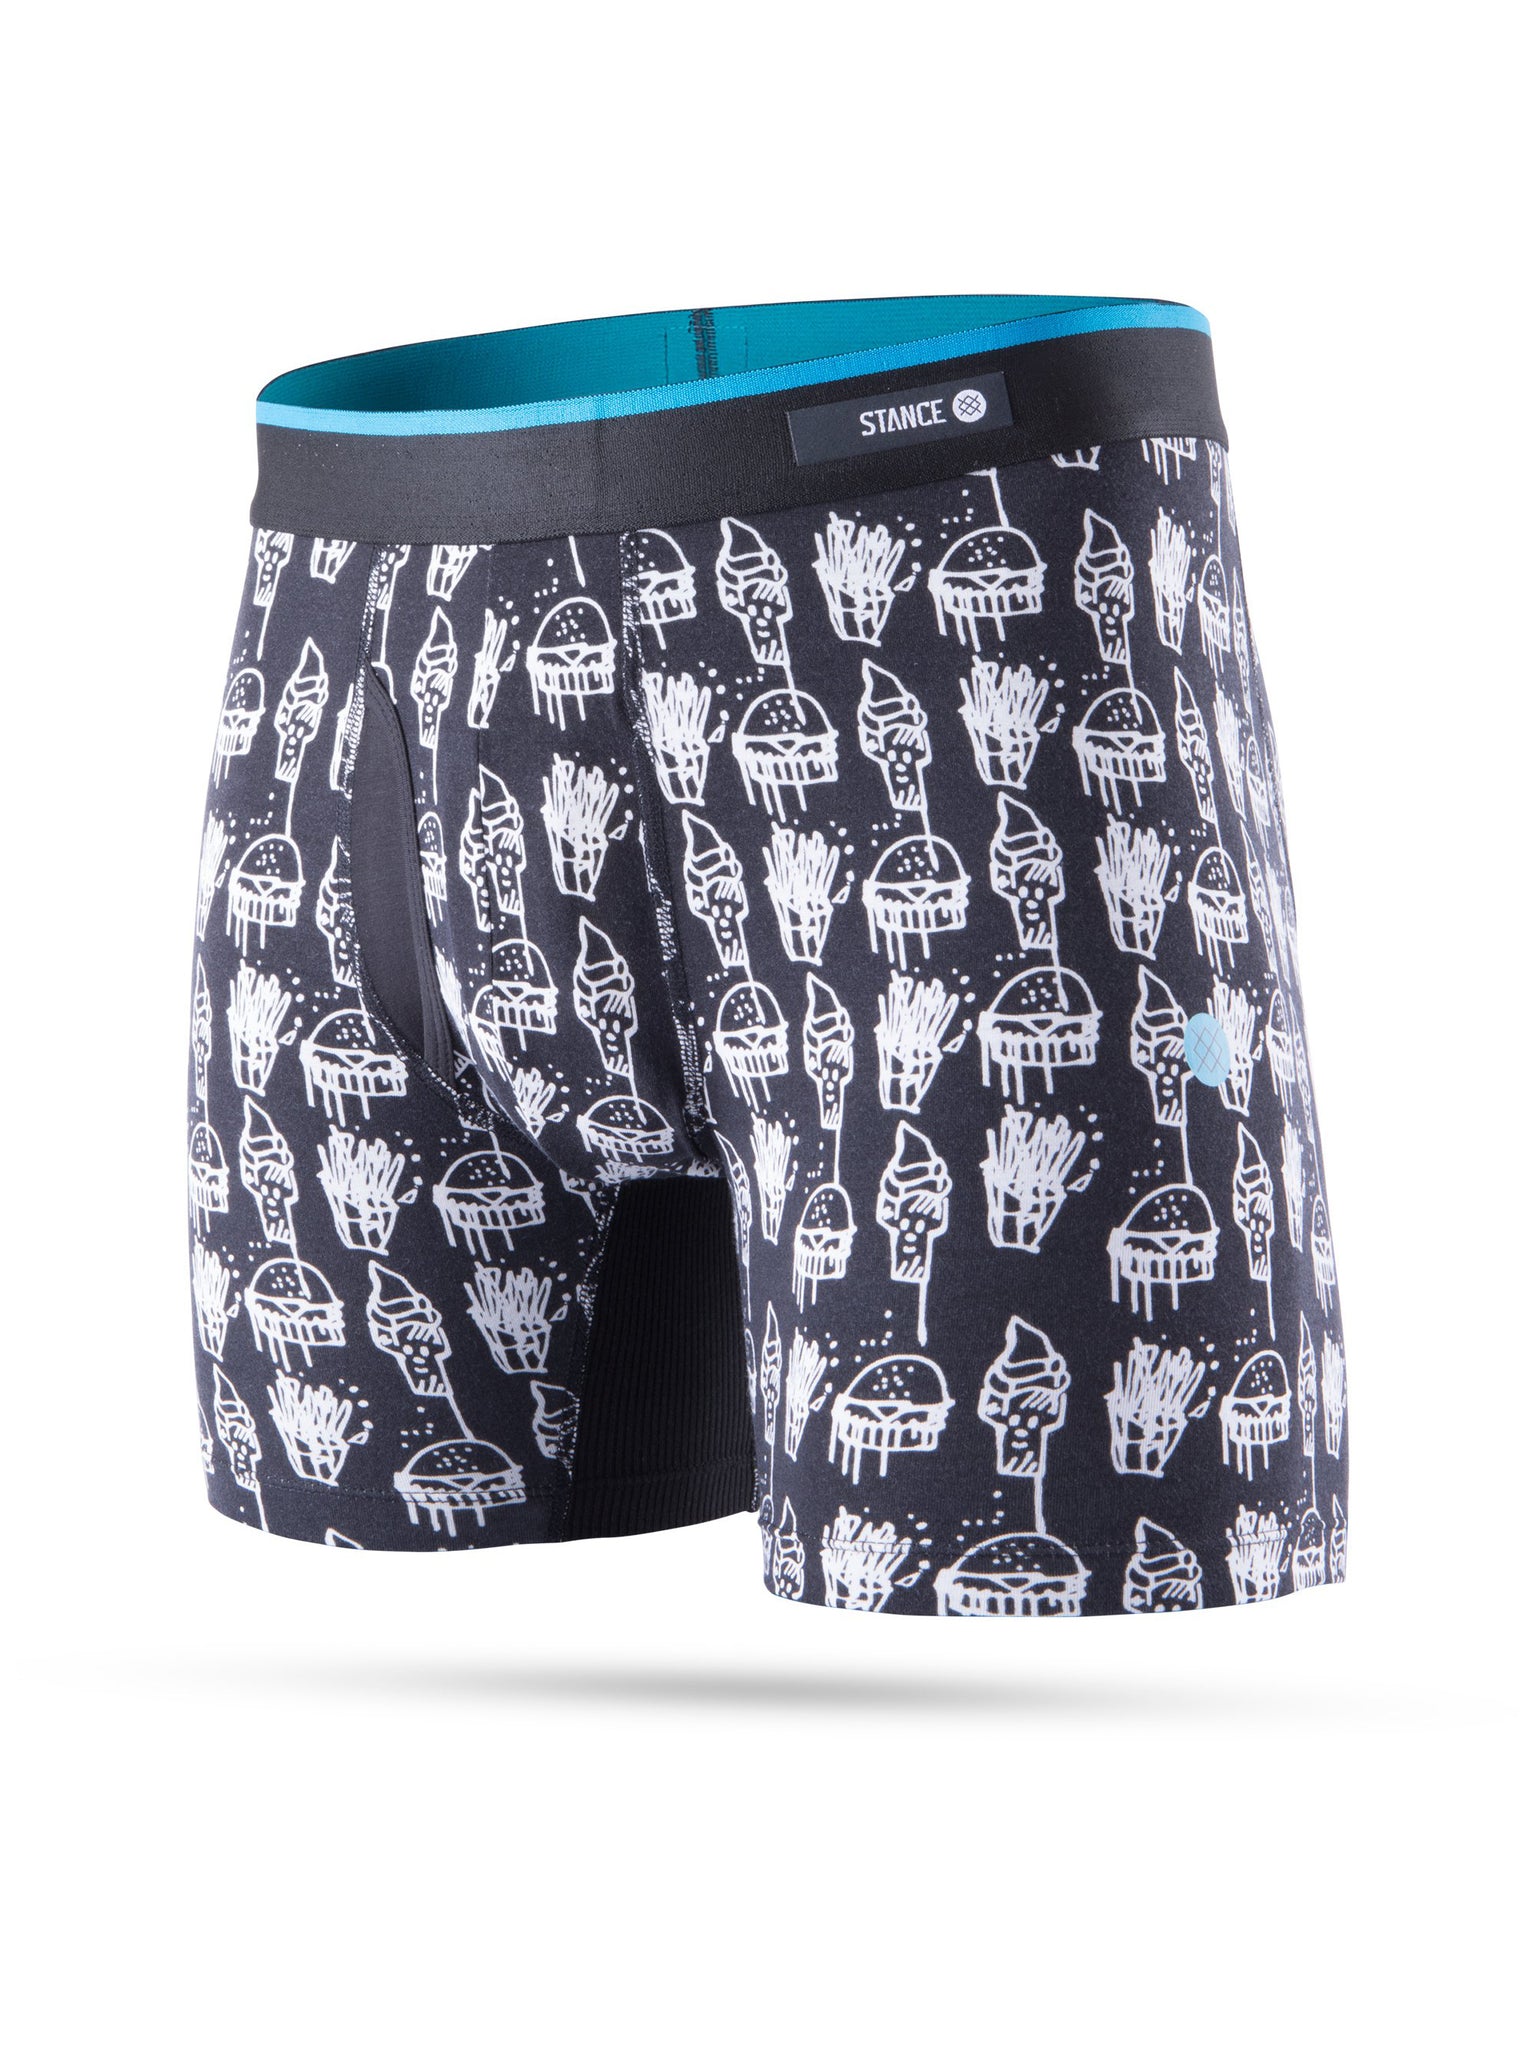 Men's Underwear – Empire Online Store